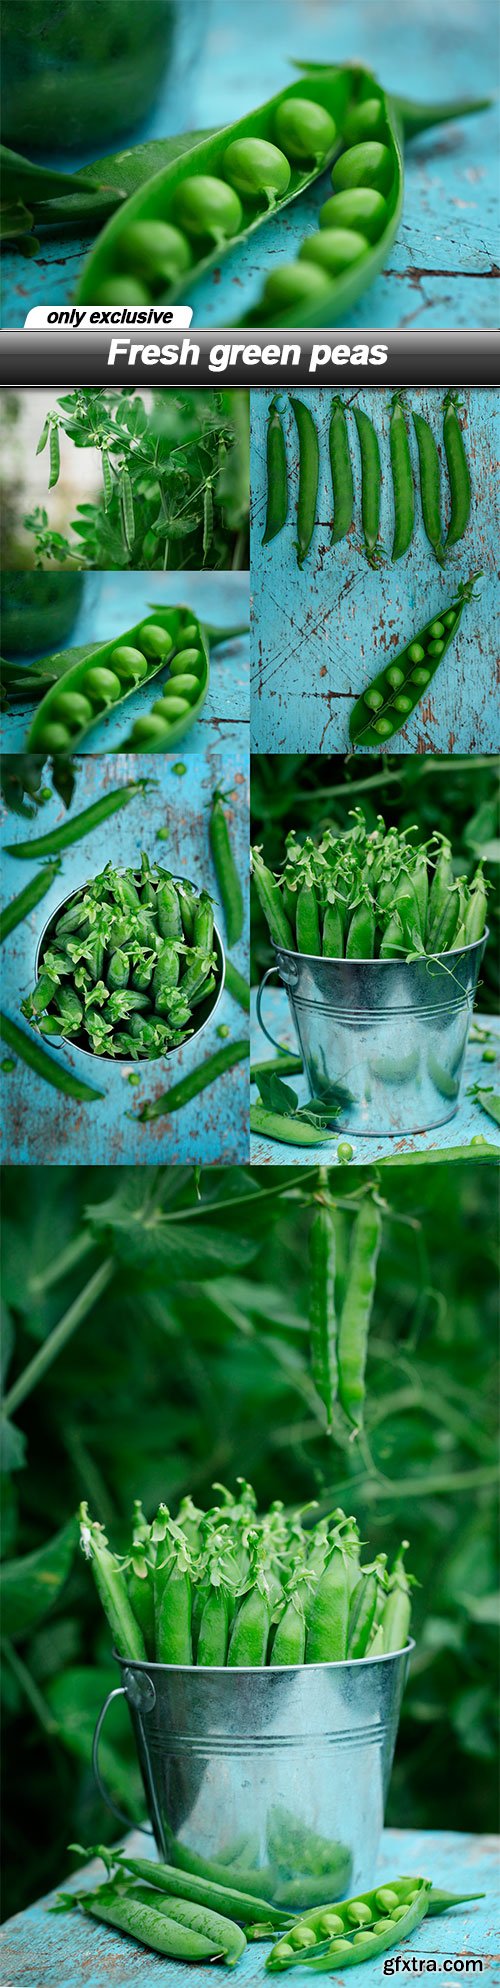 Fresh green peas - 7 UHQ JPEG